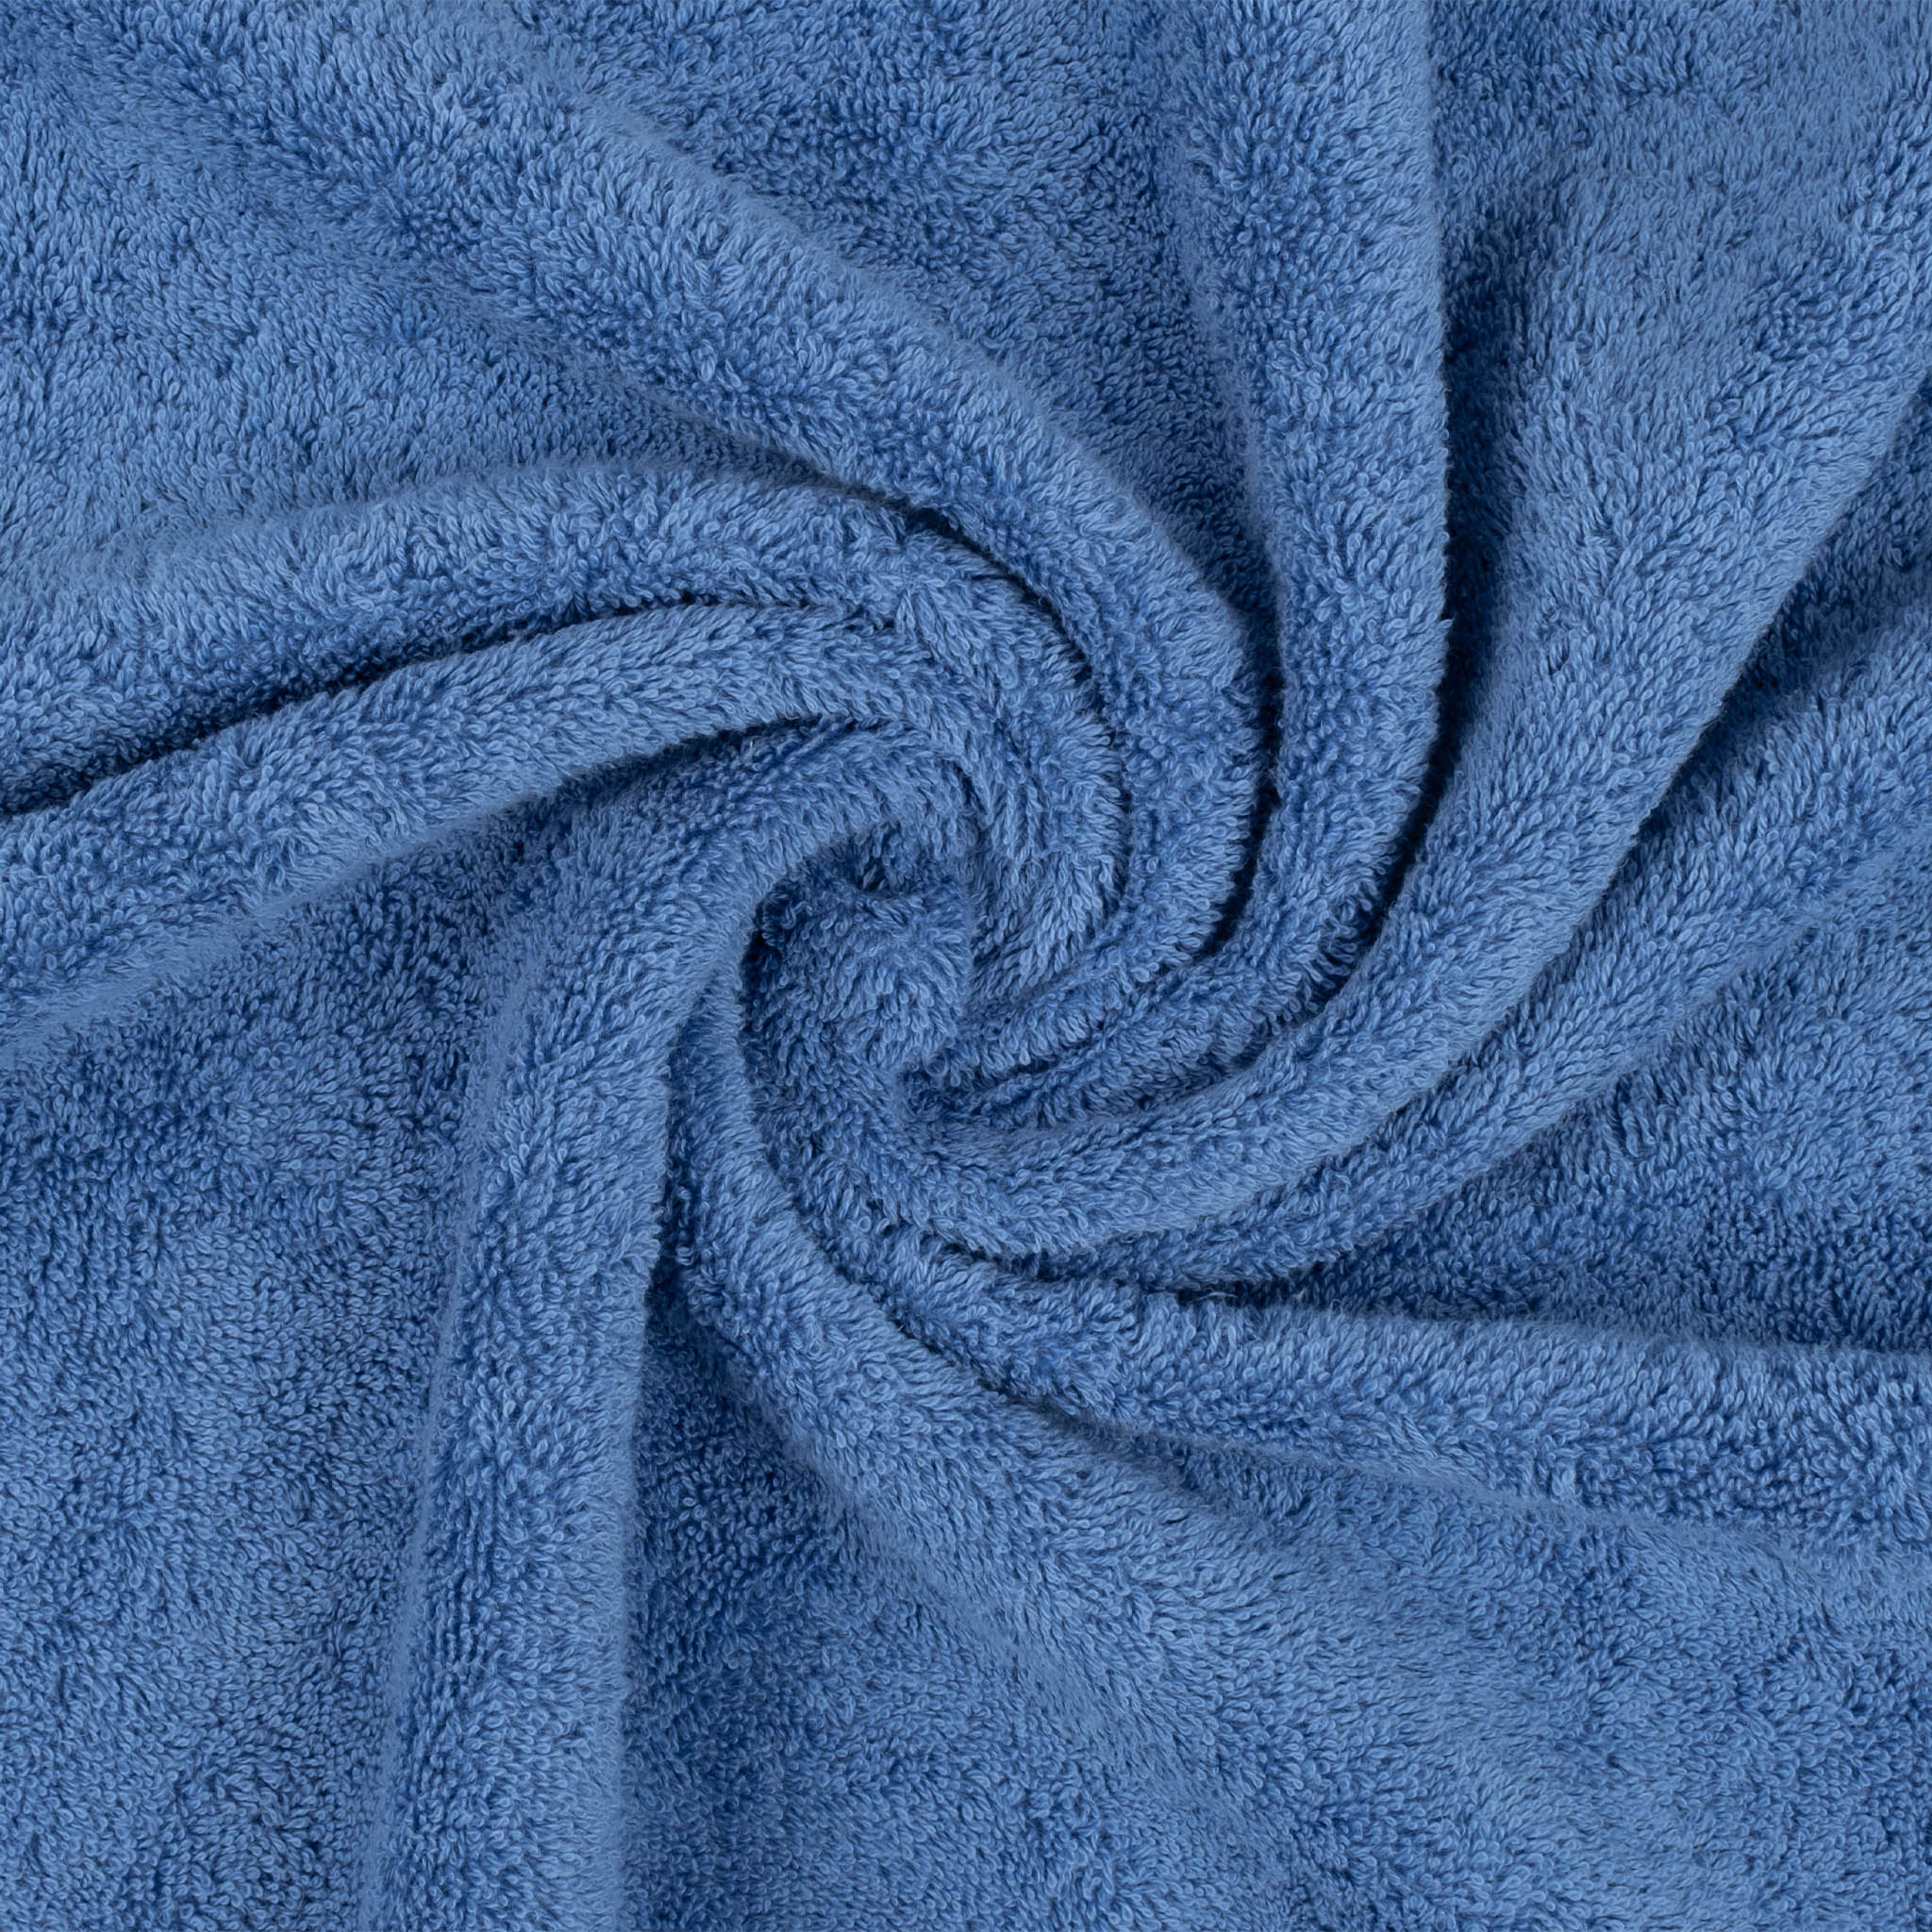 American Soft Linen 100% Turkish Cotton 6 Piece Towel Set Wholesale electric-blue-7